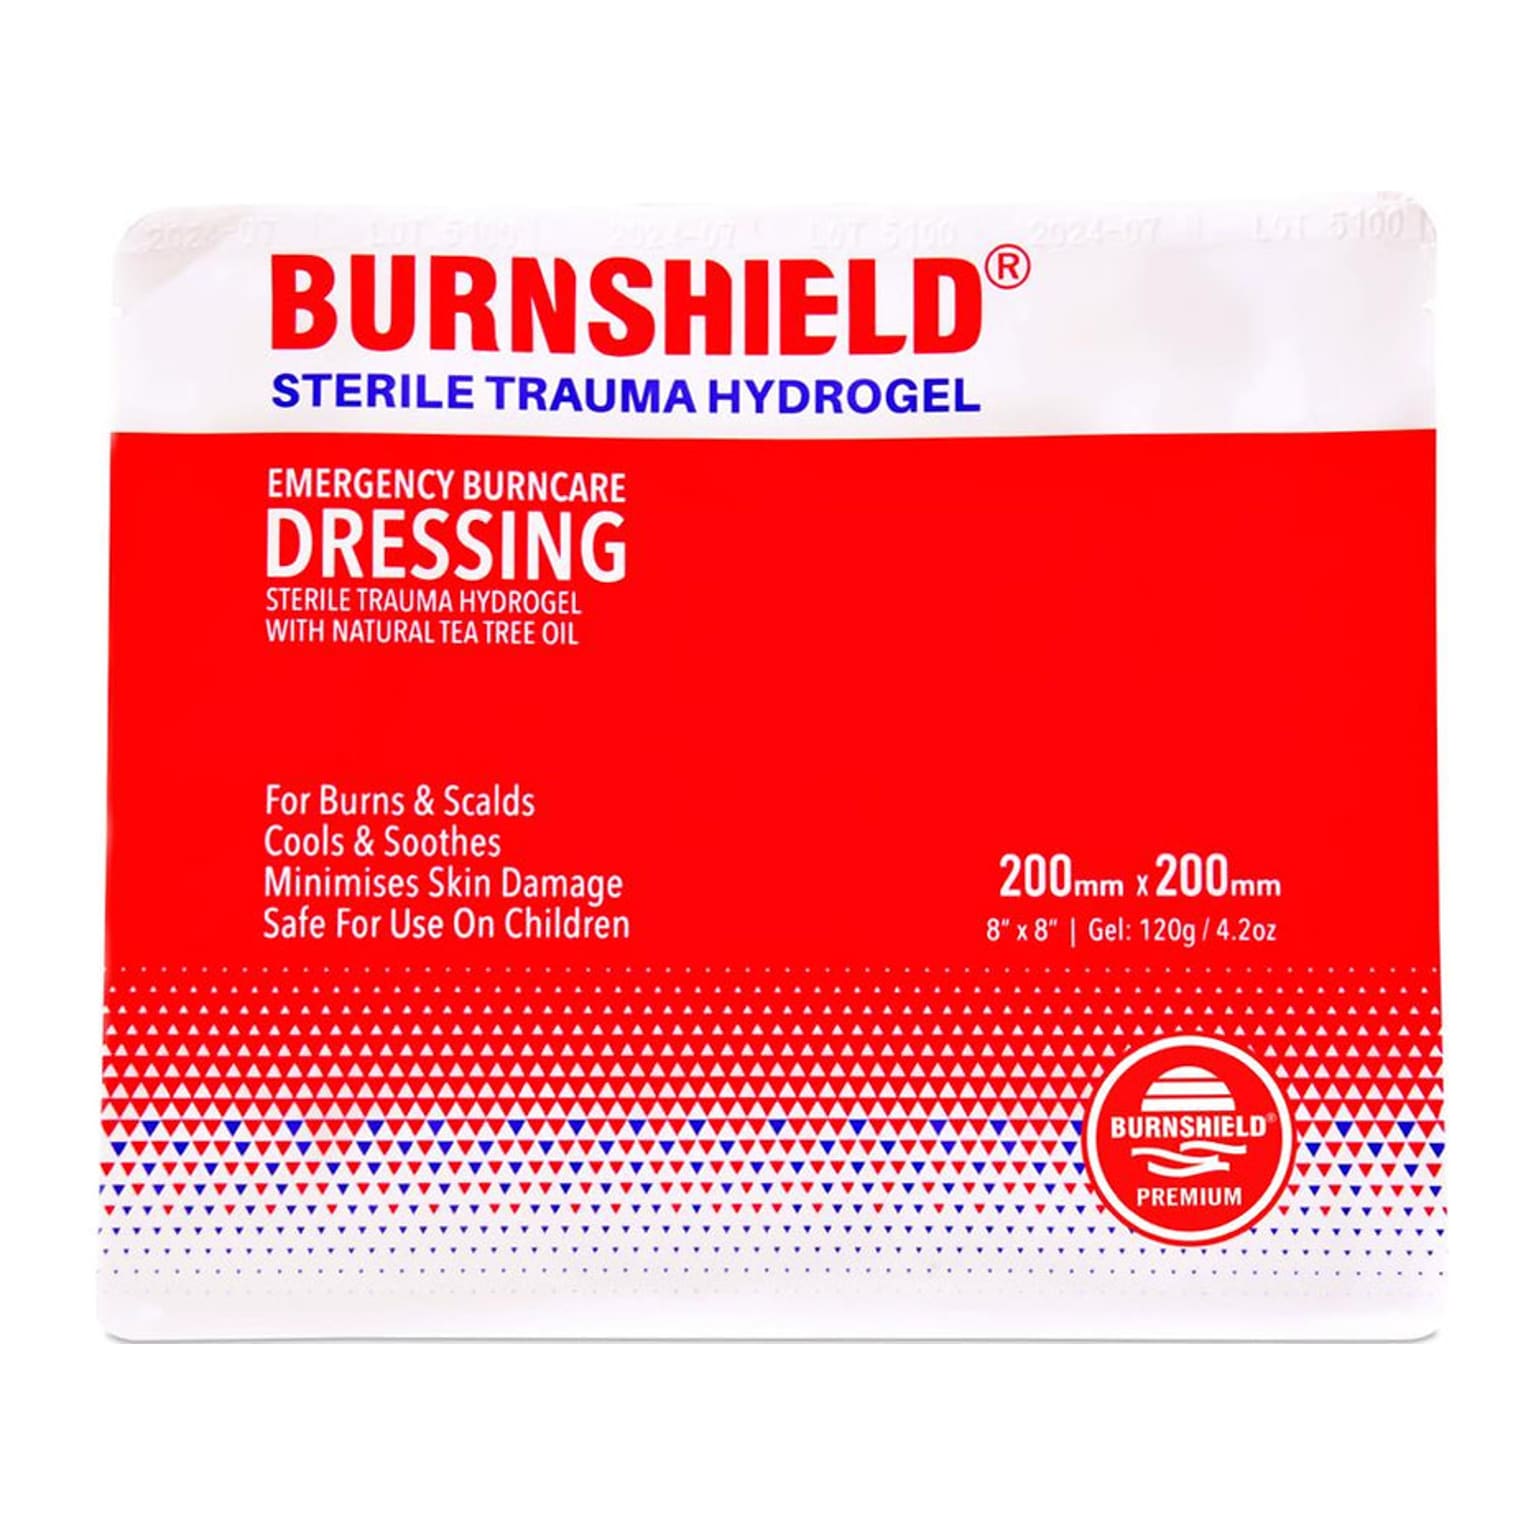 Burnshield Sterile Trauma Hydrogel Emergency Burn Dressing, 8 x 8, 5/Carton (900906)